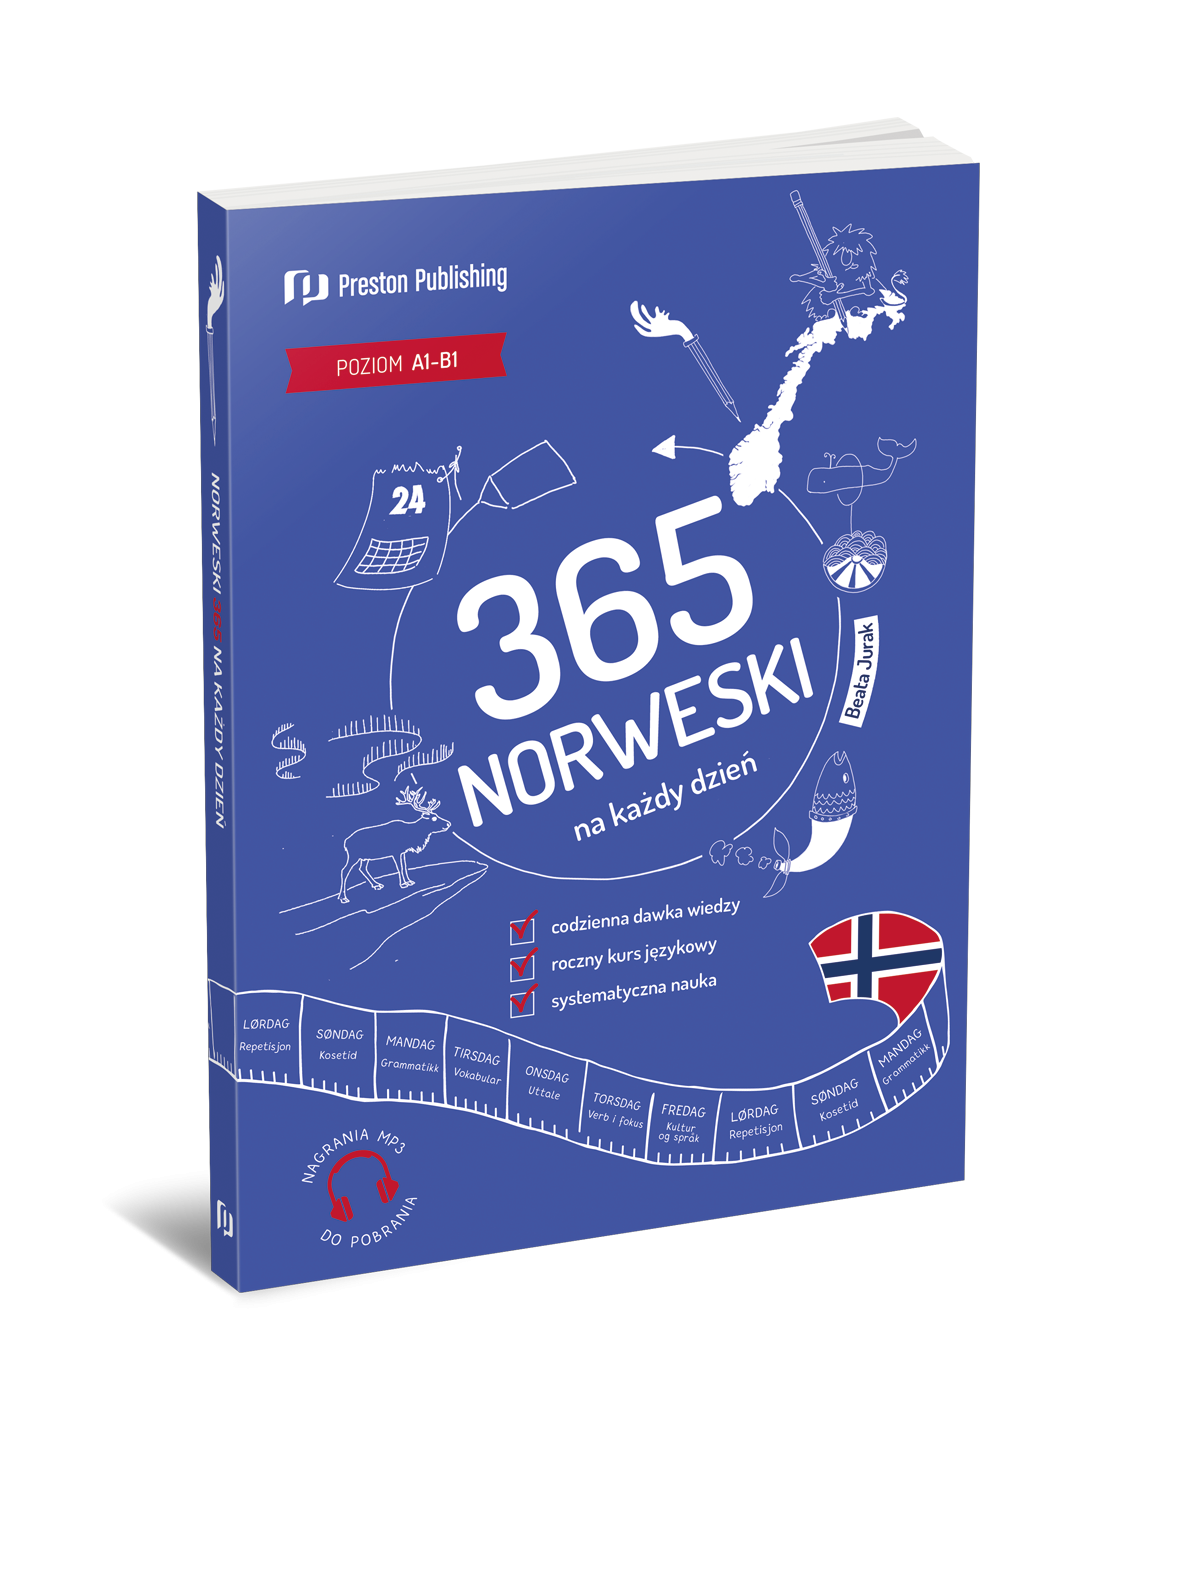 Norweski 365 na każdy dzień (A1-B1)